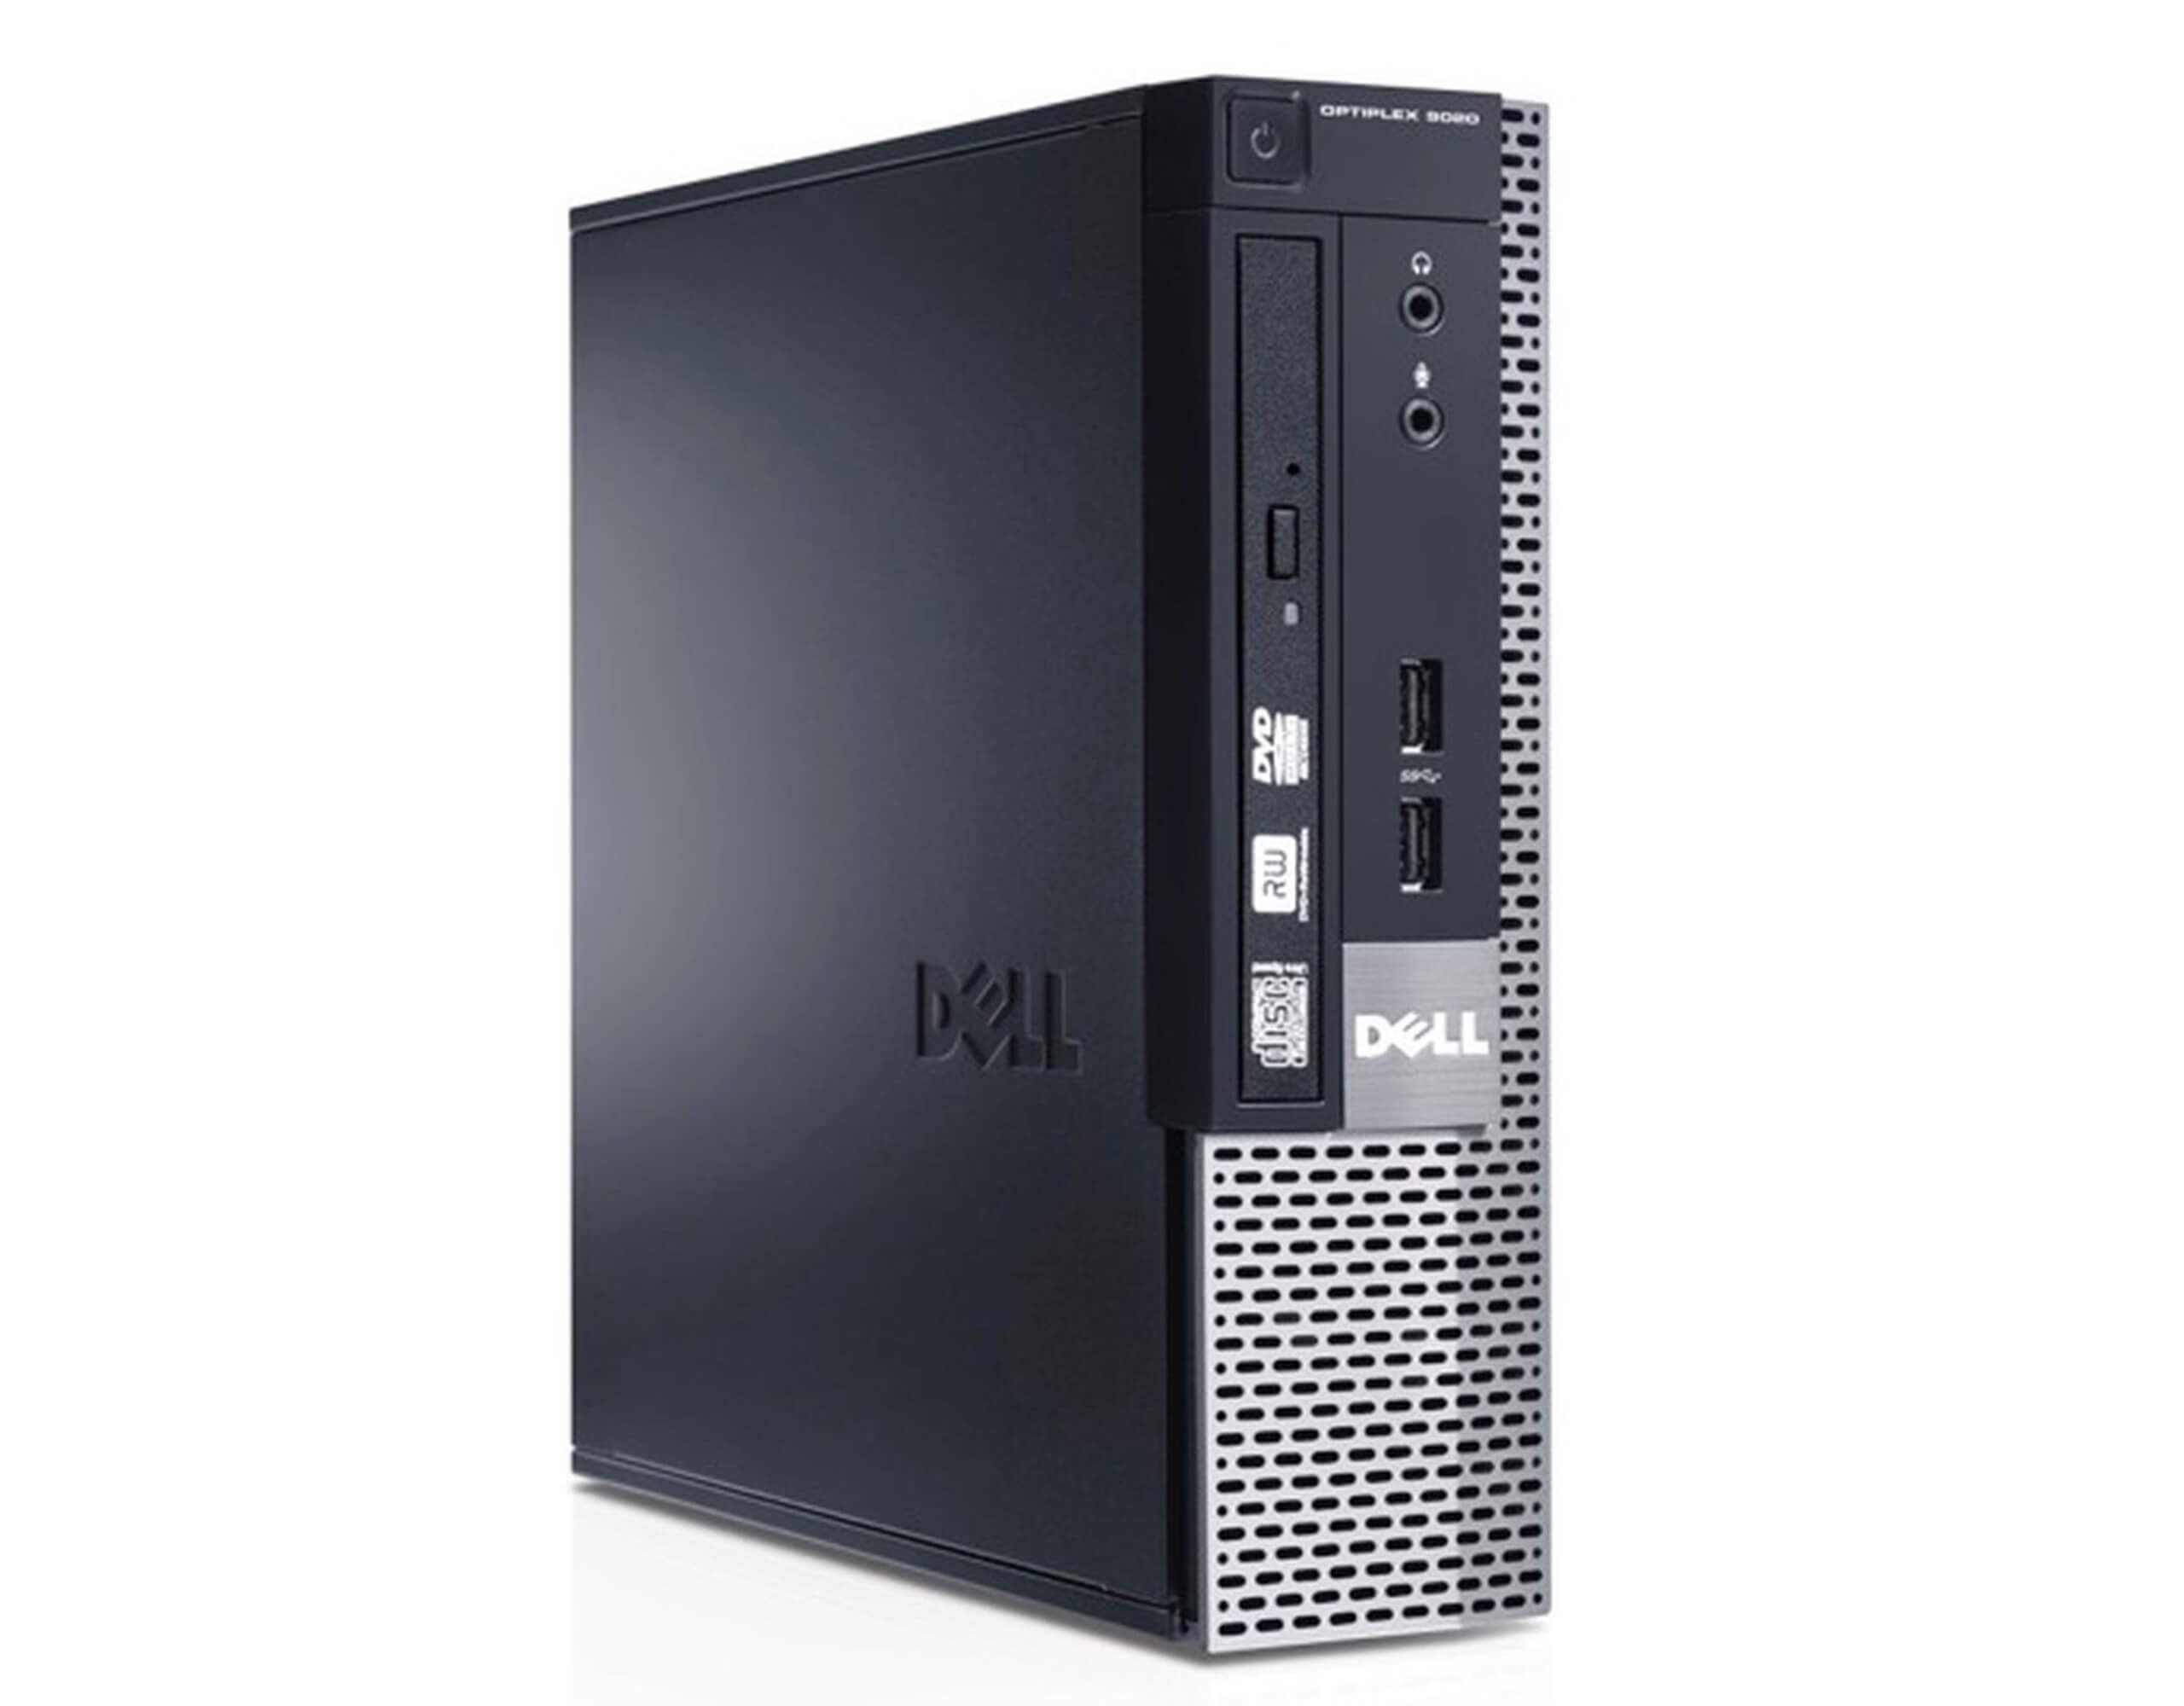 DELL 9020 USFF I5-4590S 3.0 / 8192 MB DDR3 / 320 GB  / DVD-RW / WINDOWS 10 PRO